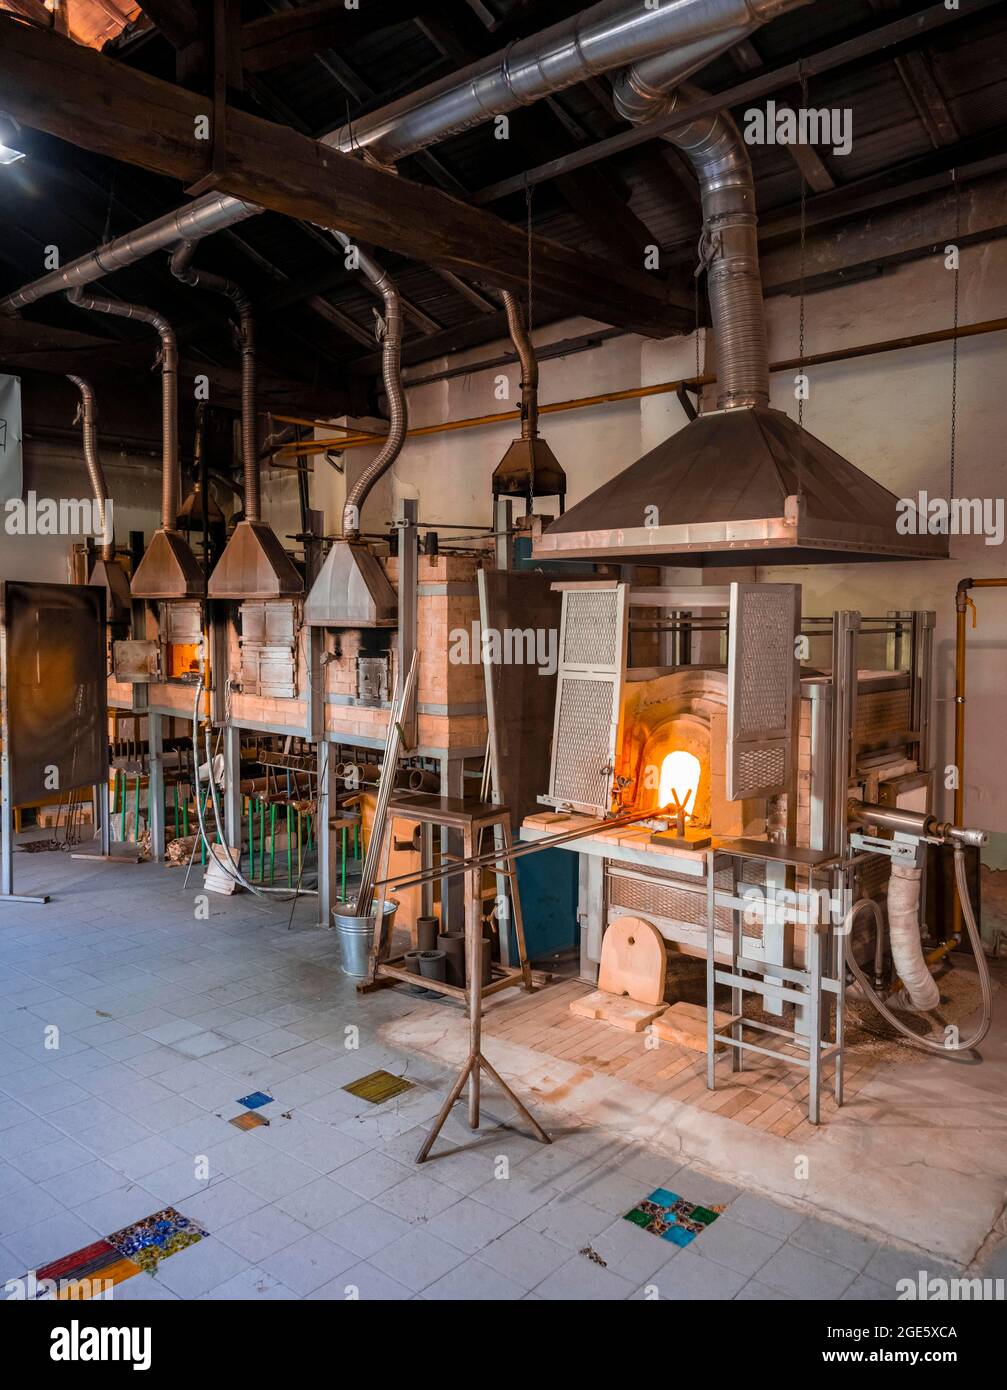 Glasofen zur Verarbeitung von heißem Glas in der Werkstatt eines  Glasbläsers, Murano, Venedig, Venetien, Italien Stockfotografie - Alamy